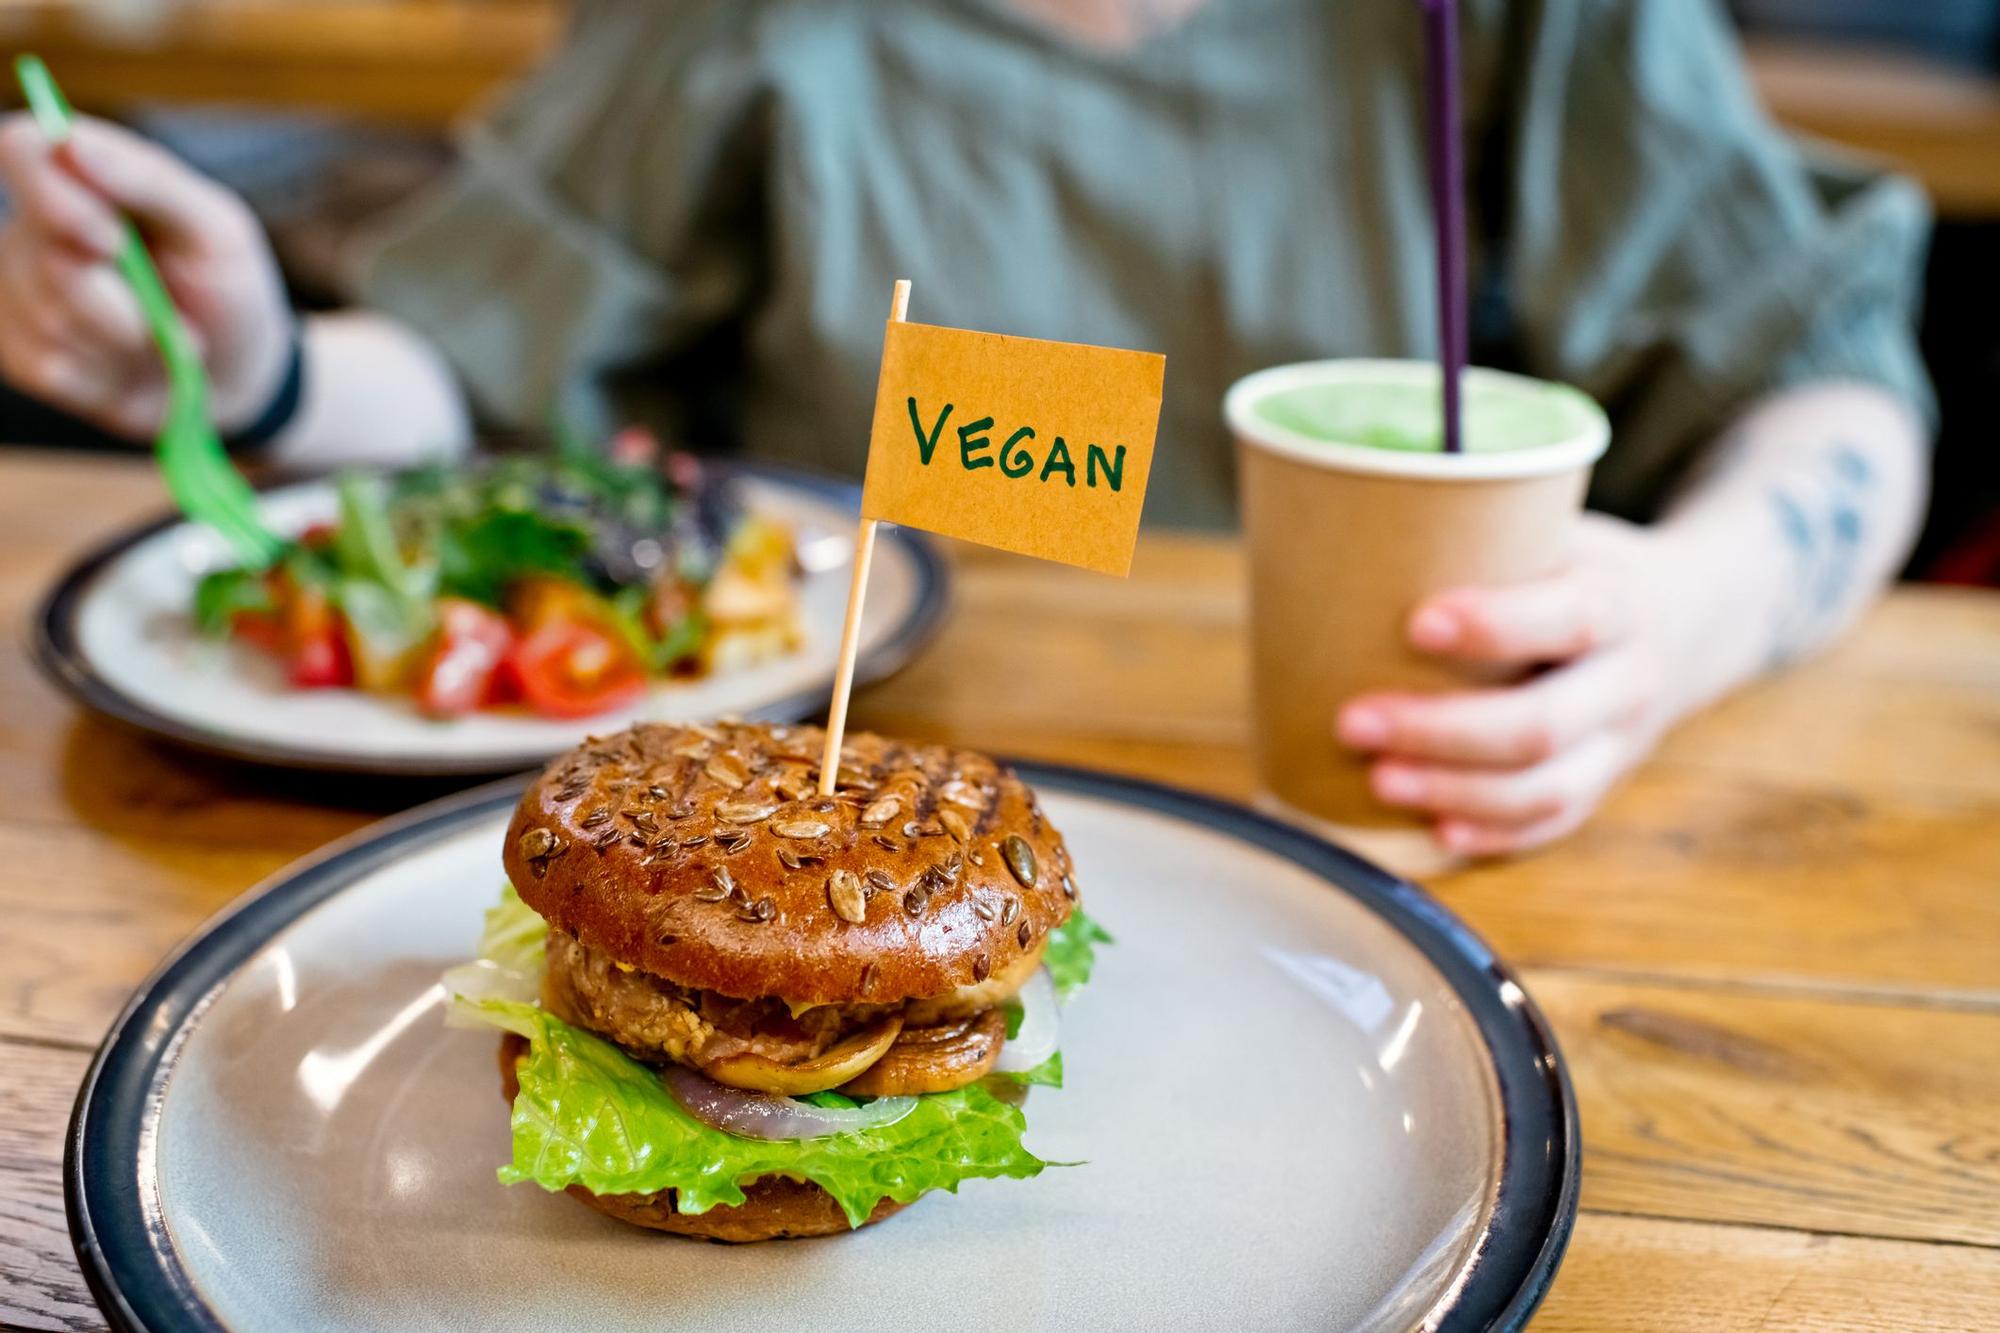 Los veganos son cada vez más en el mundo y se refleja en las ofertas gastronómicas